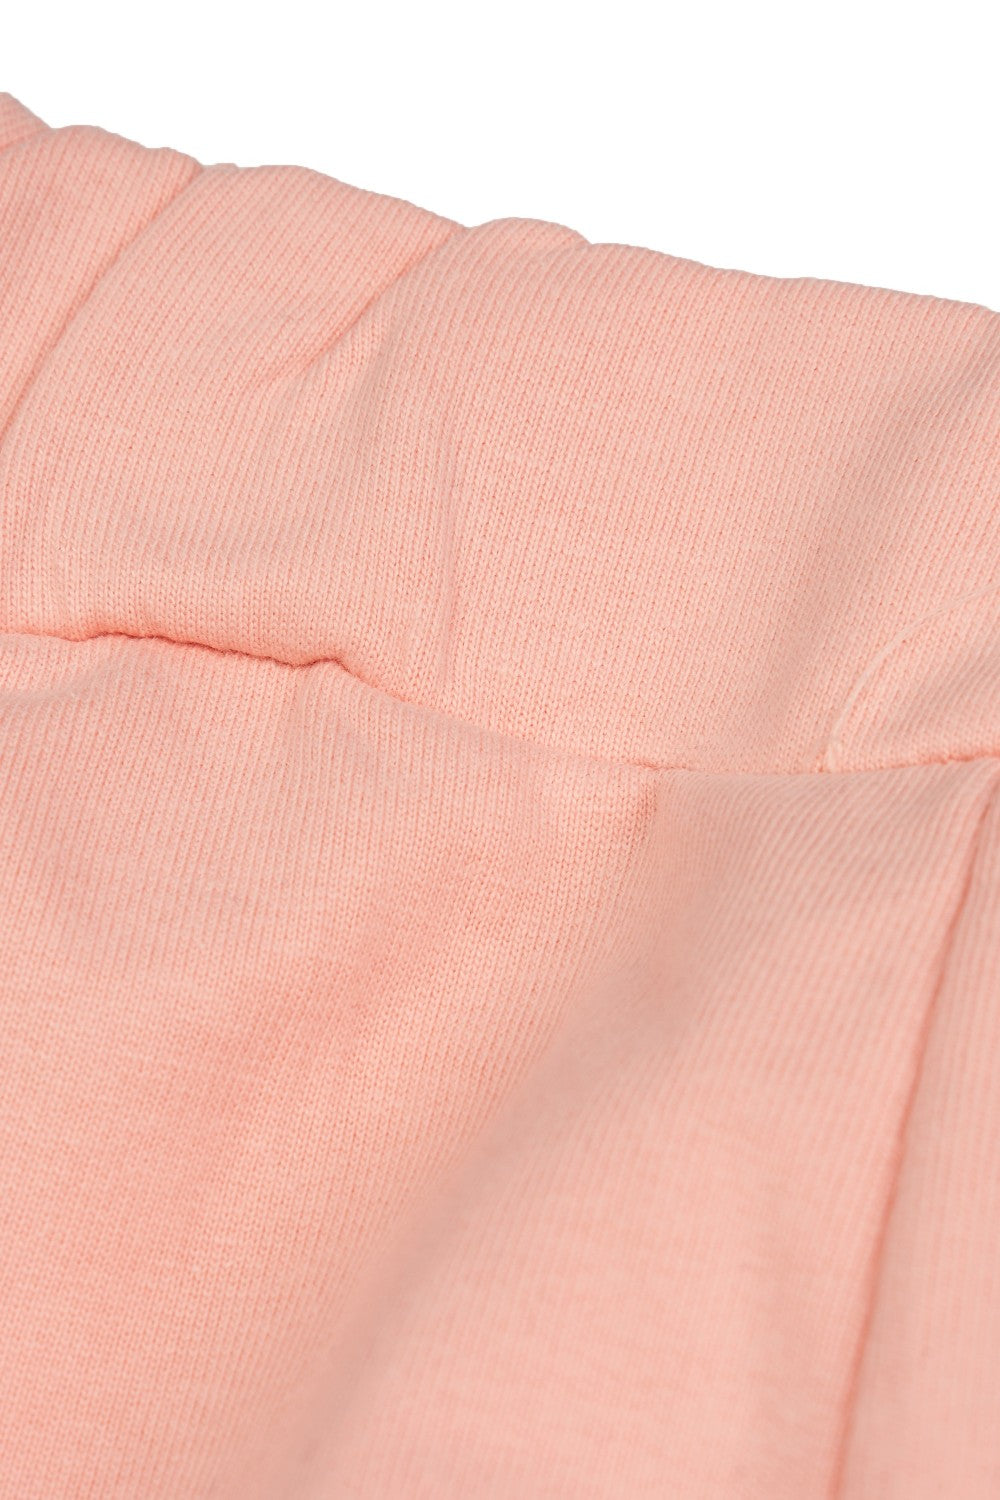 Pantalón de niña rosa VERANO/Charanga